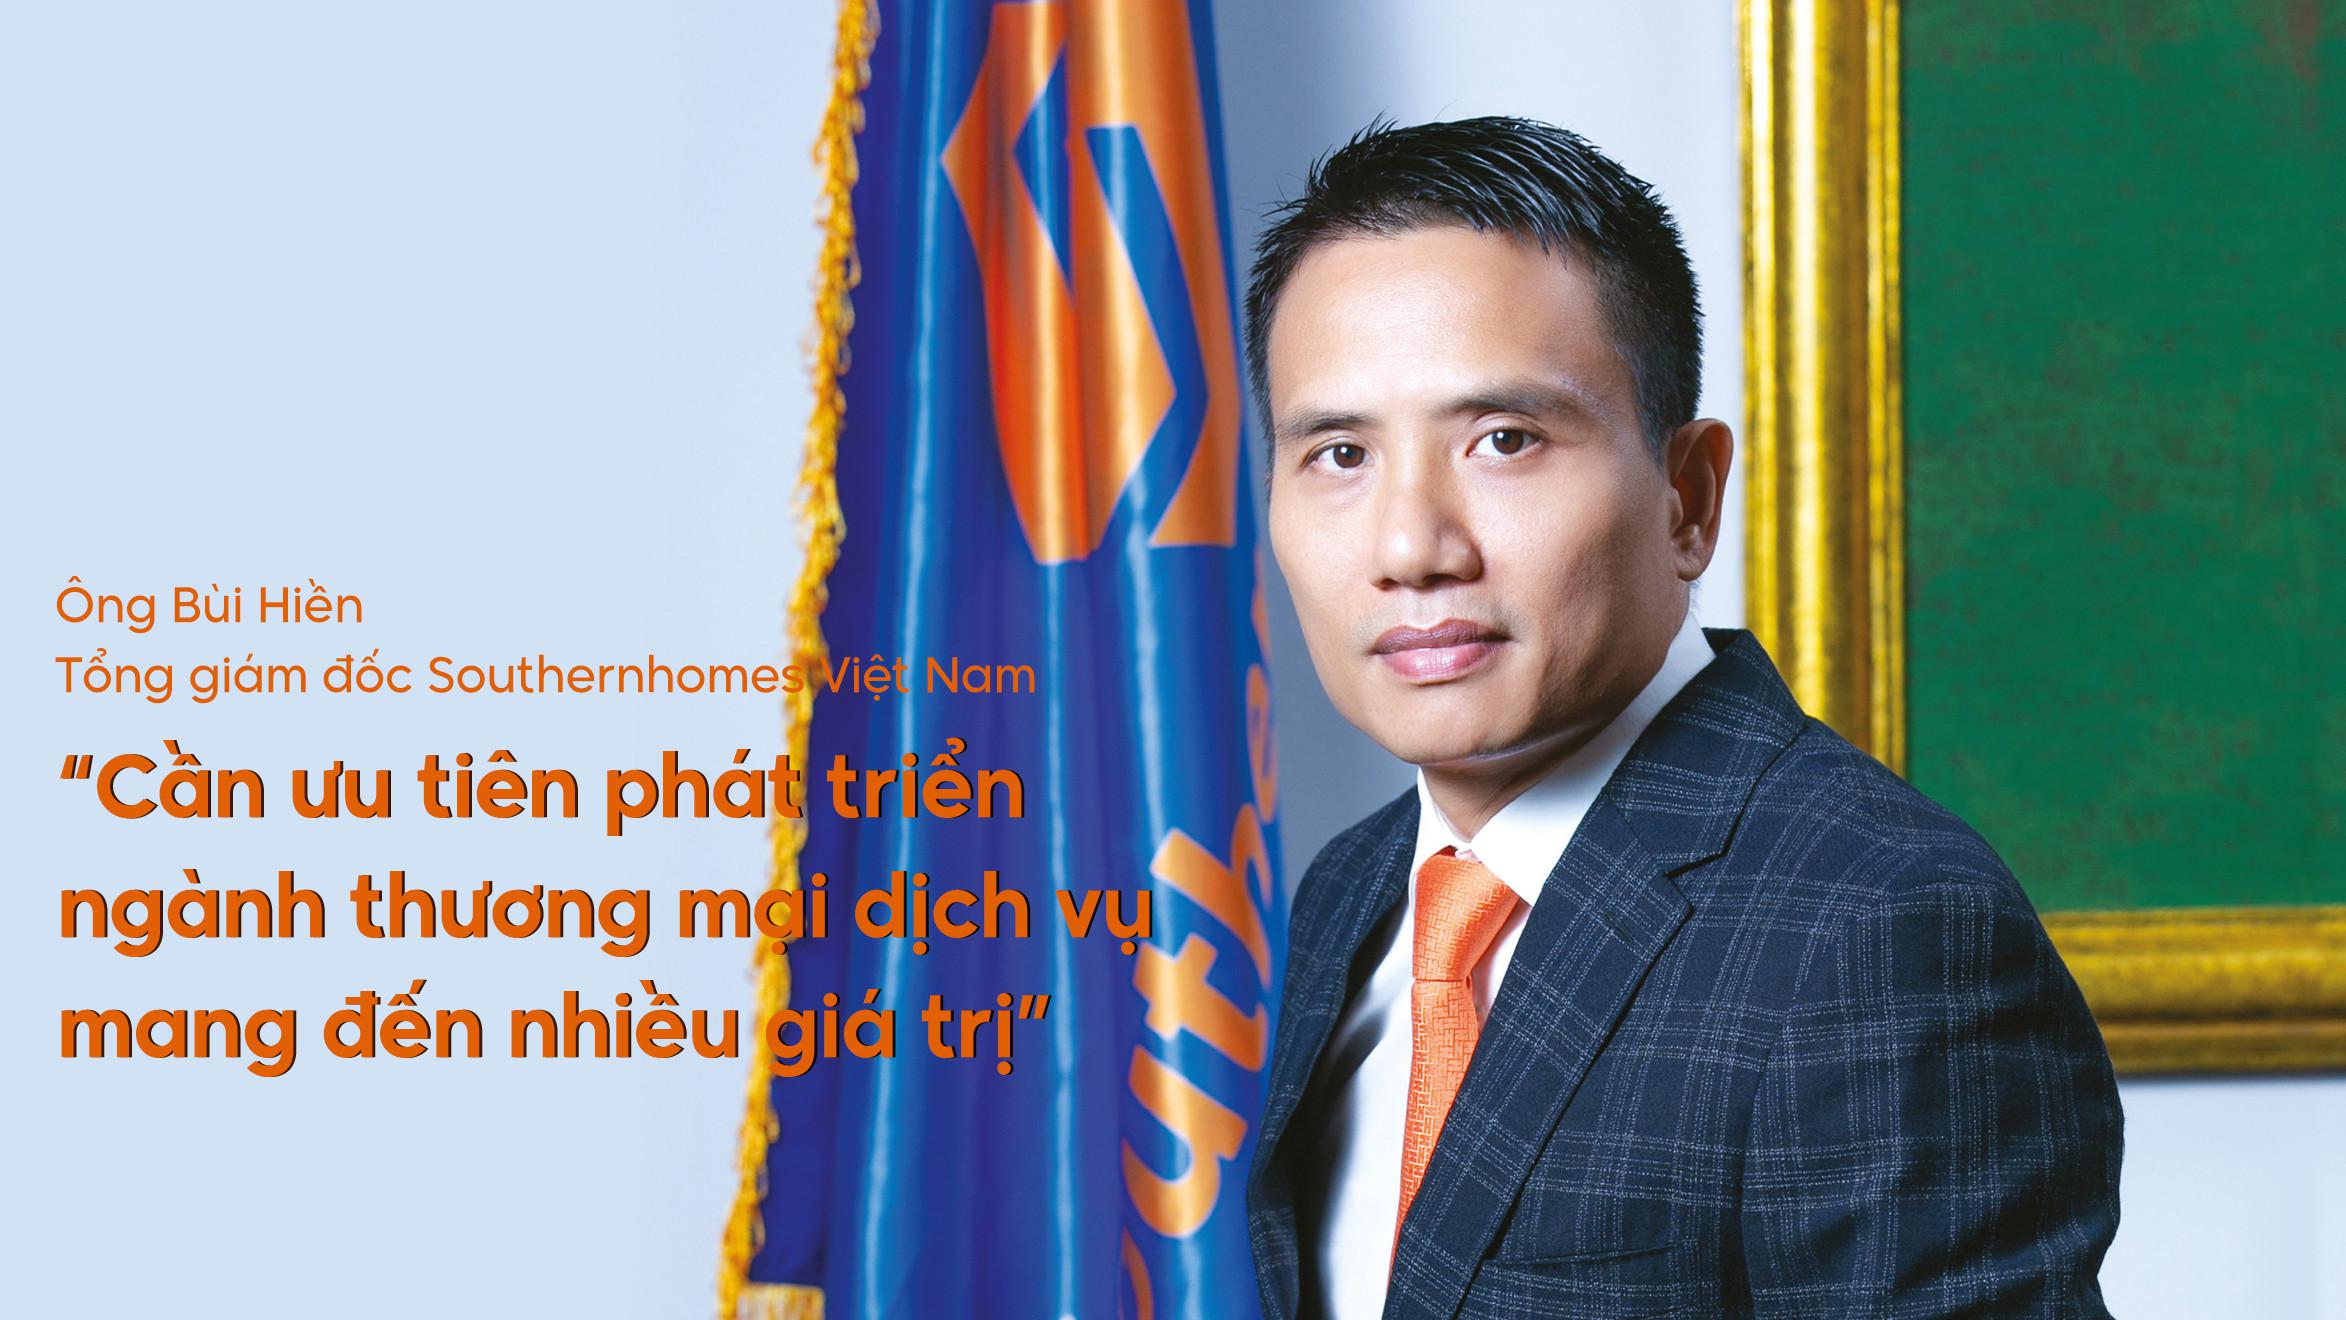 Ông Bùi Hiền – Tổng giám đốc Southernhomes Việt Nam: Cần ưu tiên phát triển ngành thương mại dịch vụ mang đến nhiều giá trị